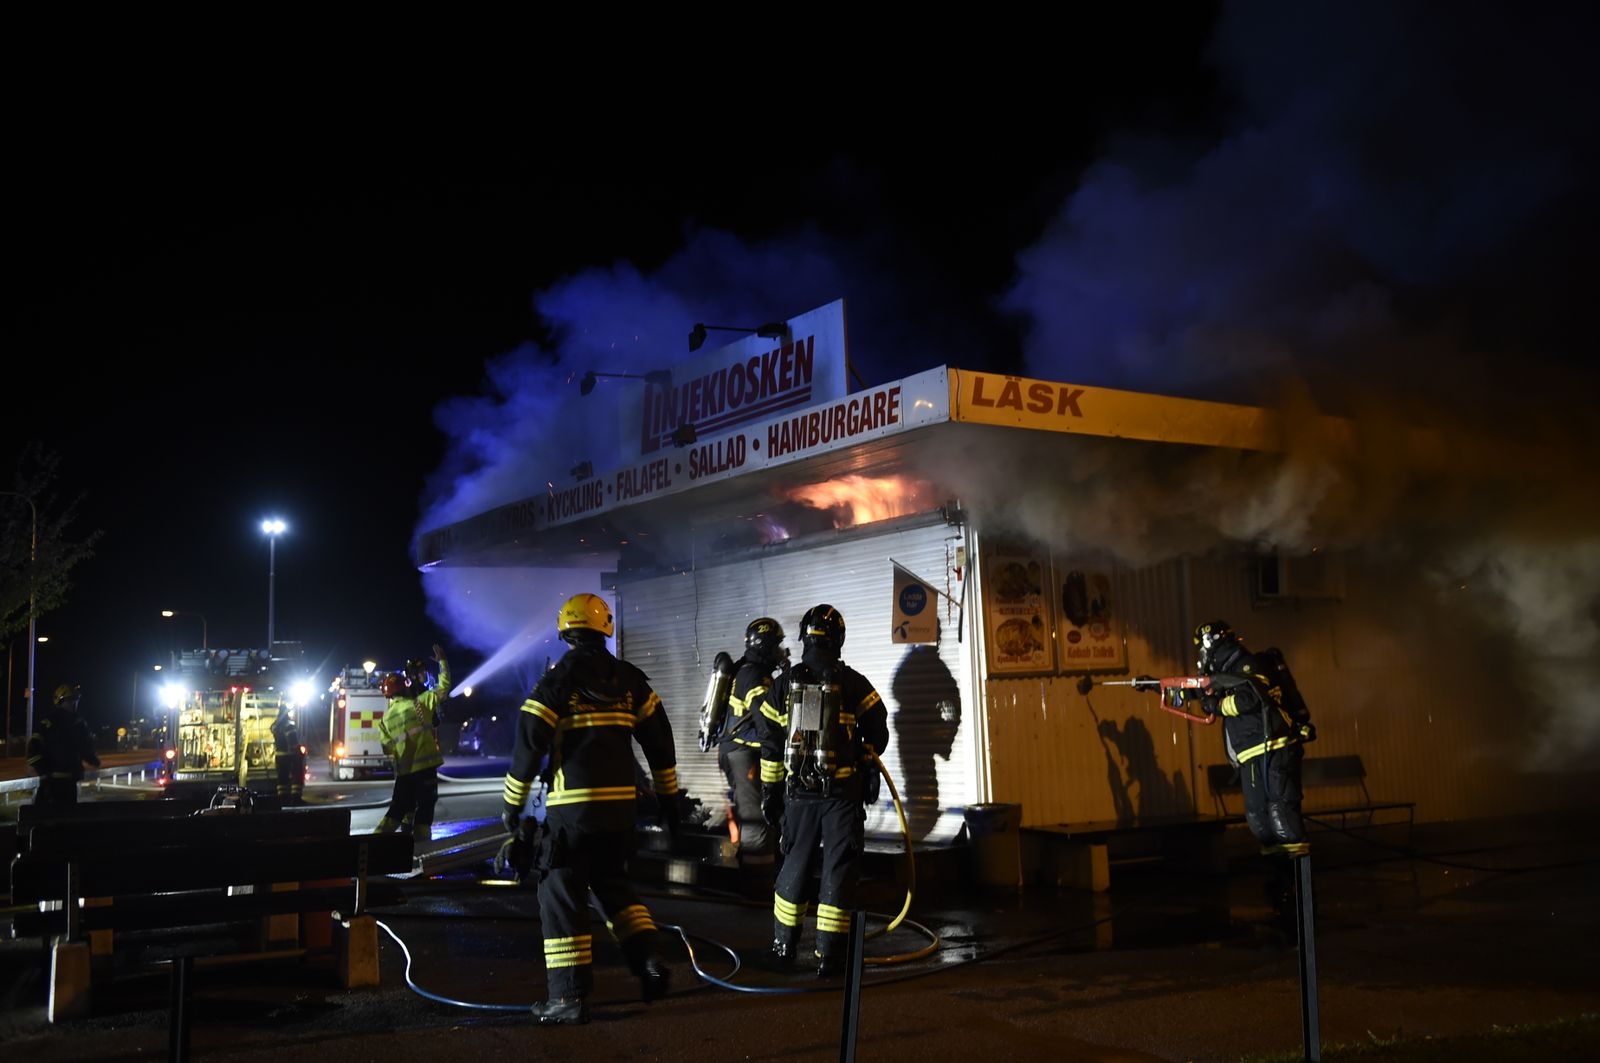 En kiosk i Näsby började brinna under natten.